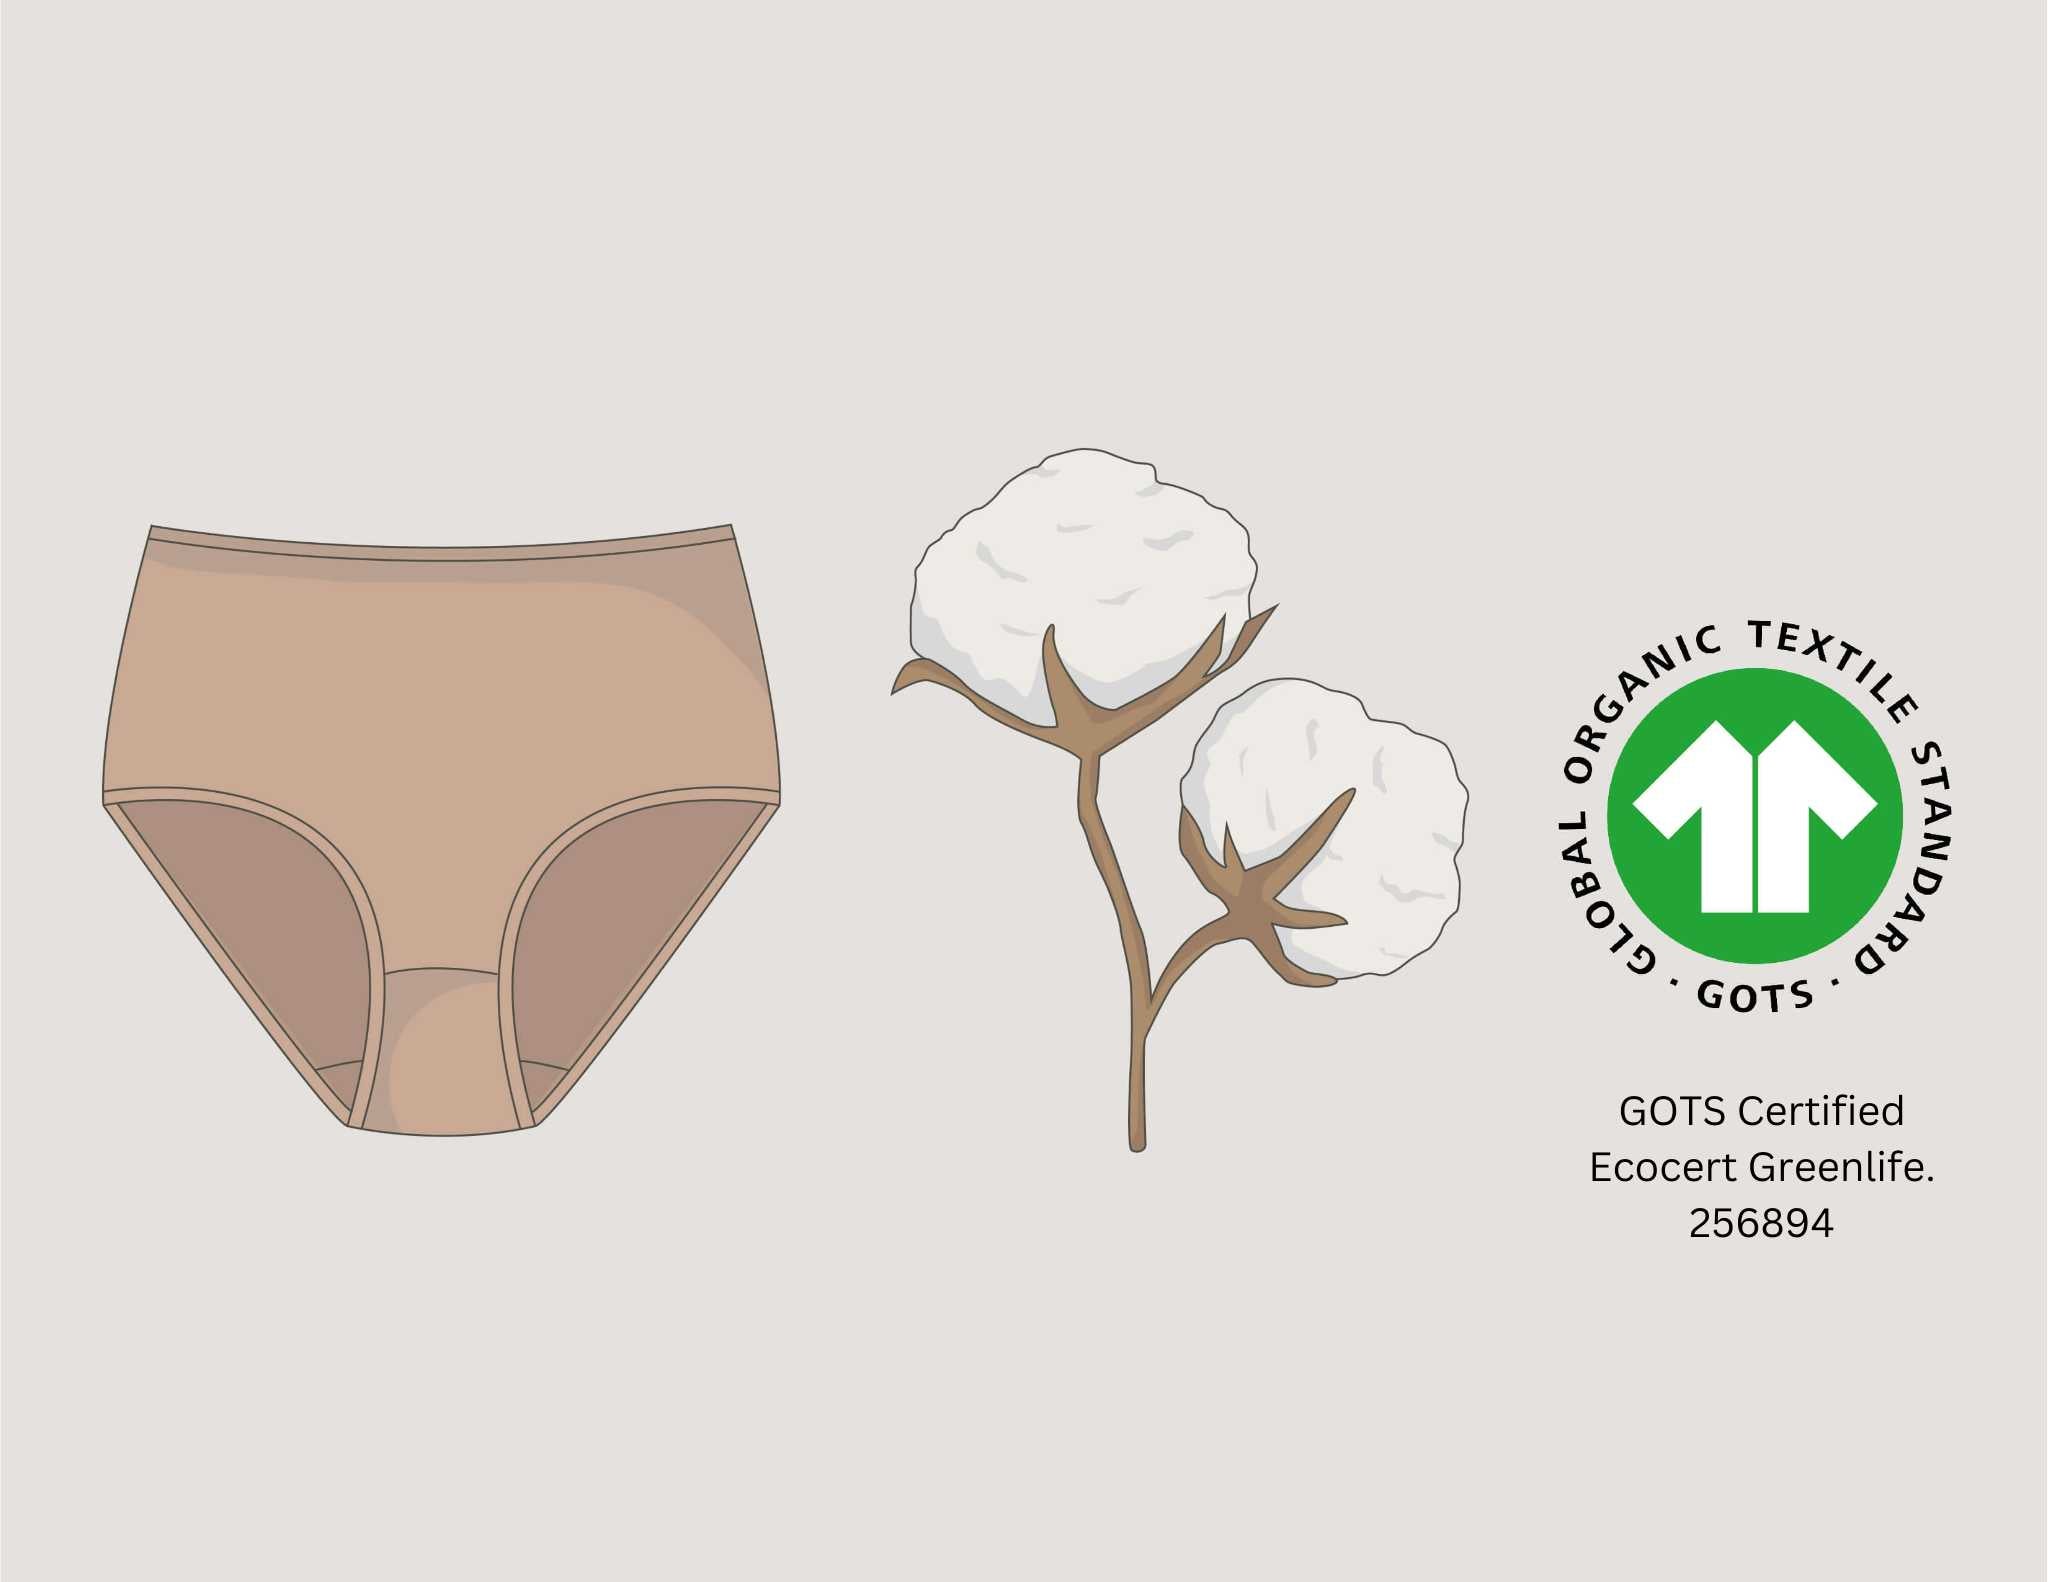 https://www.qforquinn.com/cdn/shop/files/organic-cotton-underwear-for-women.jpg?v=1695745101&width=3300